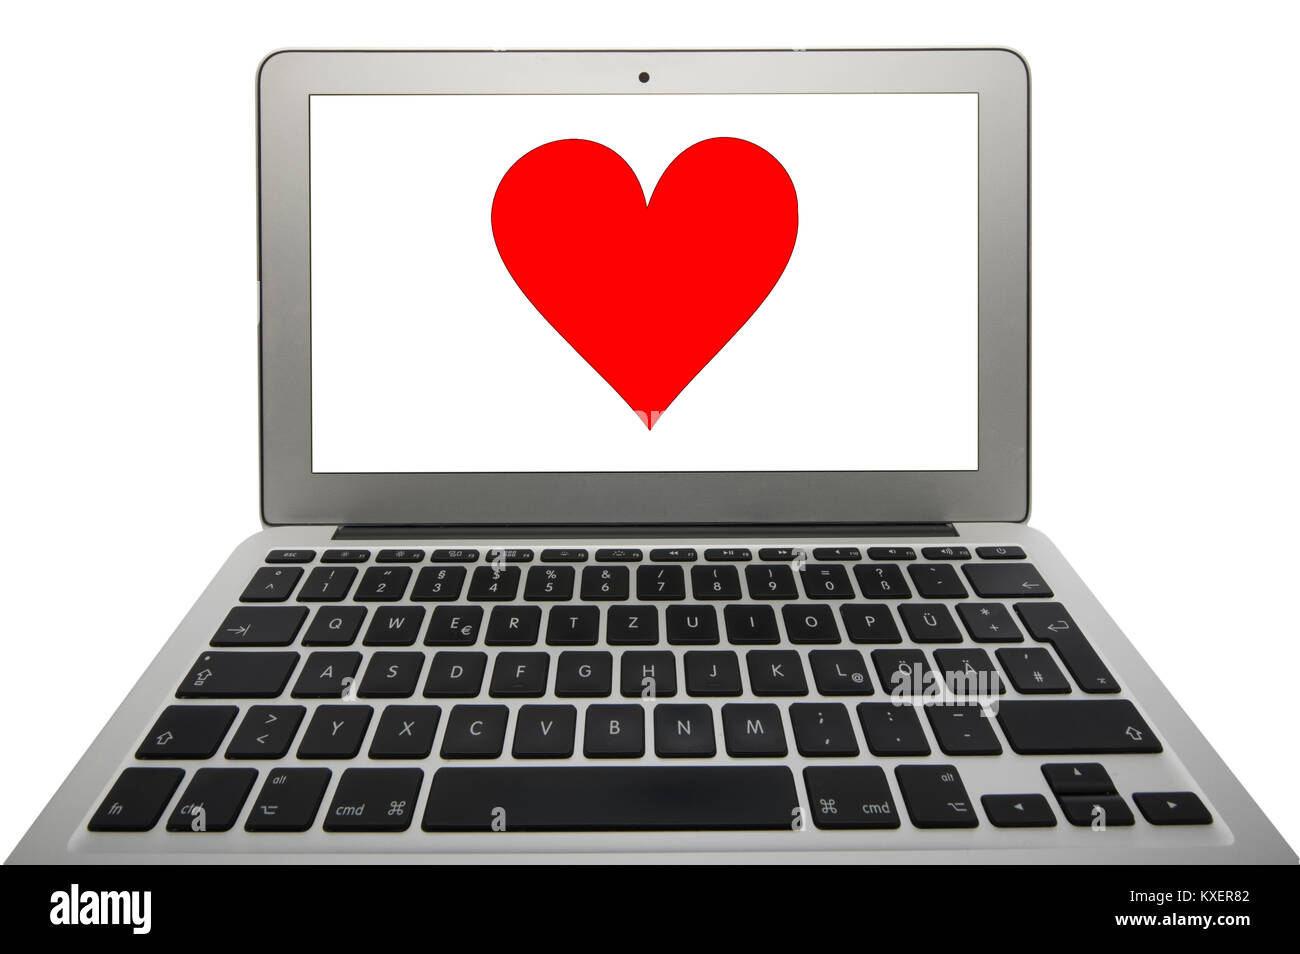 Asociación de imagen símbolo organismo,Dating Agency,corazón sitio web en Bloc de notas Foto de stock